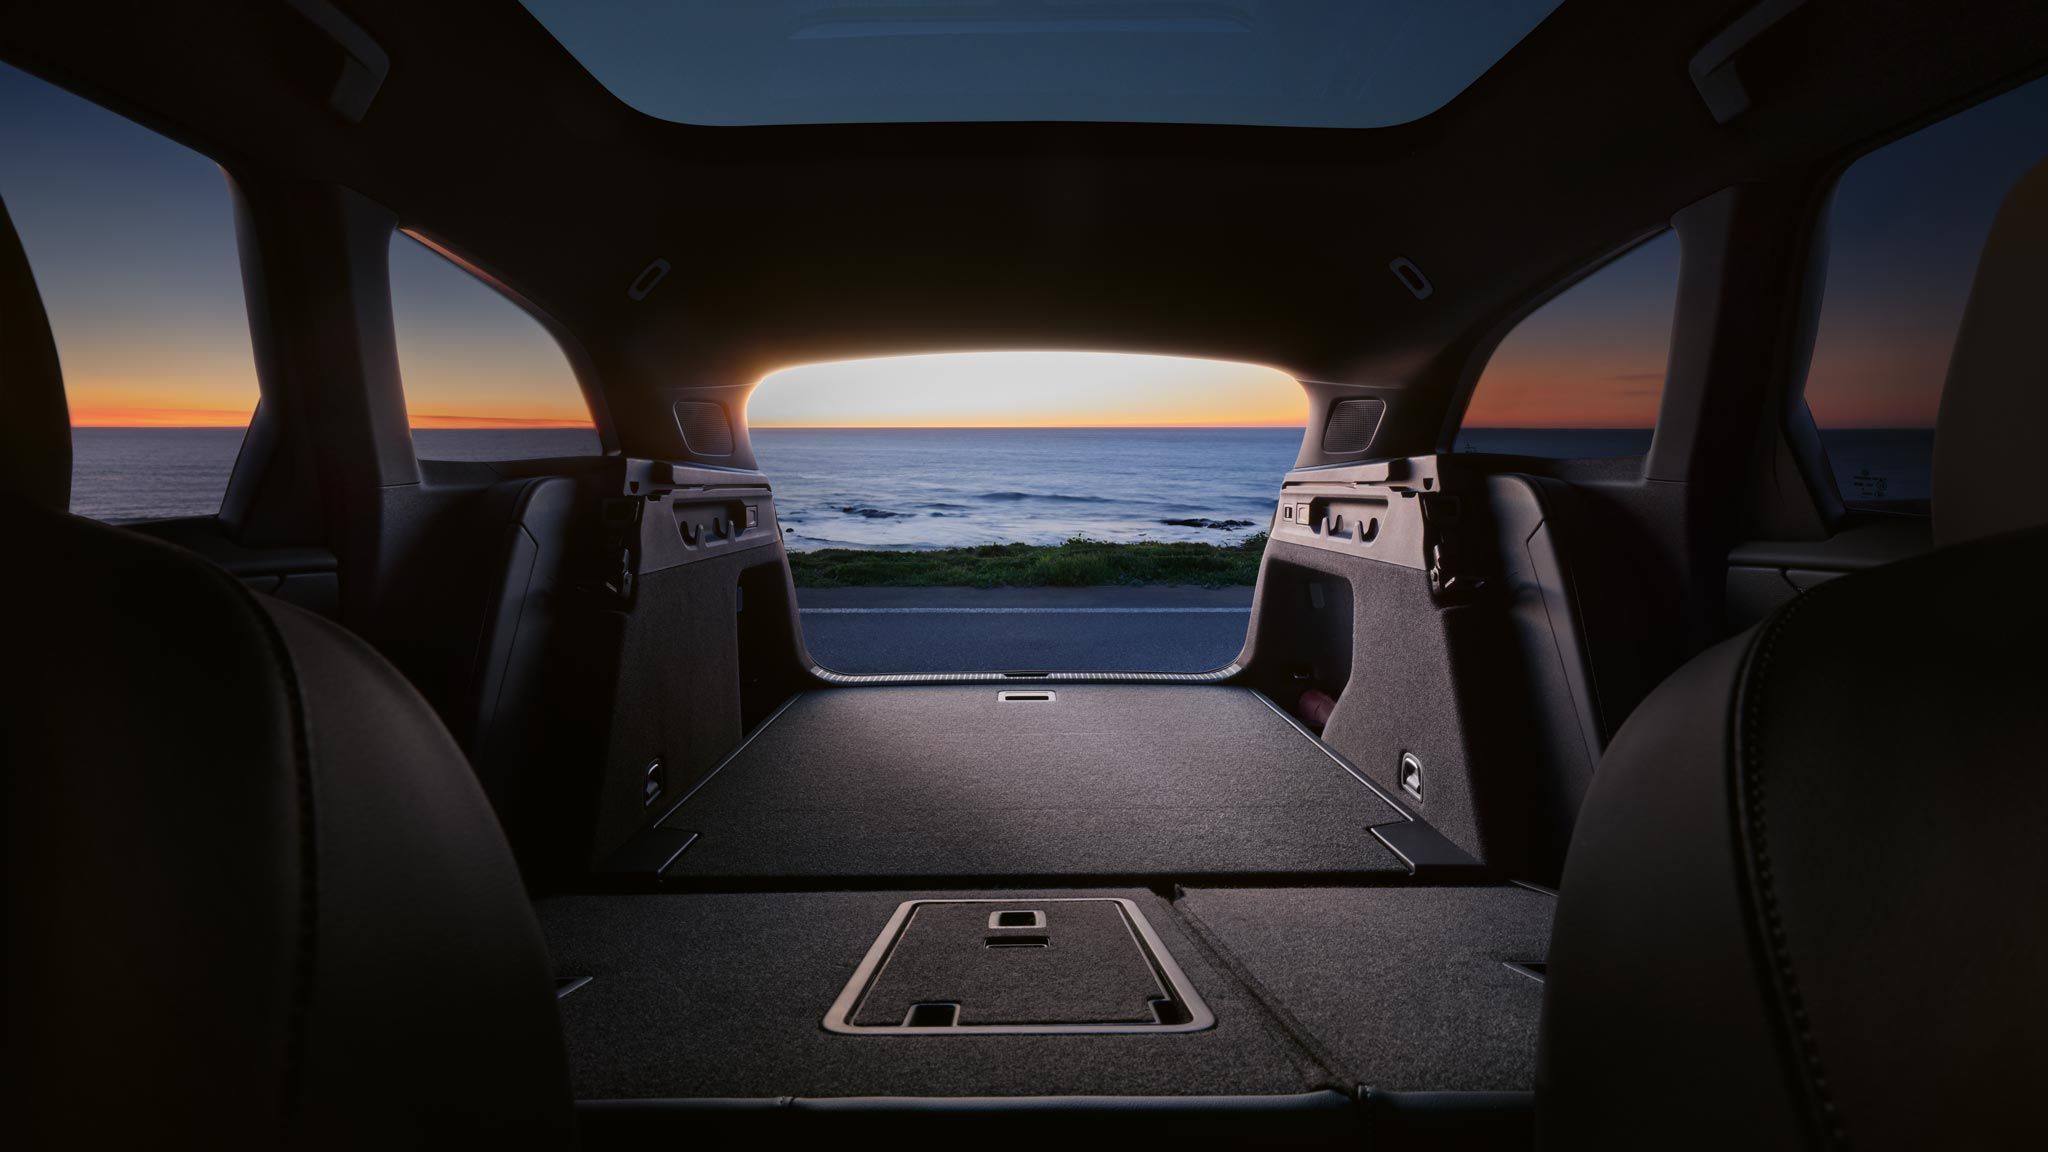 Umgeklappte Rücksitzbank und Kofferraum des VW ID.7 Tourer, im Hintergrund das Meer und ein Sonnenuntergang